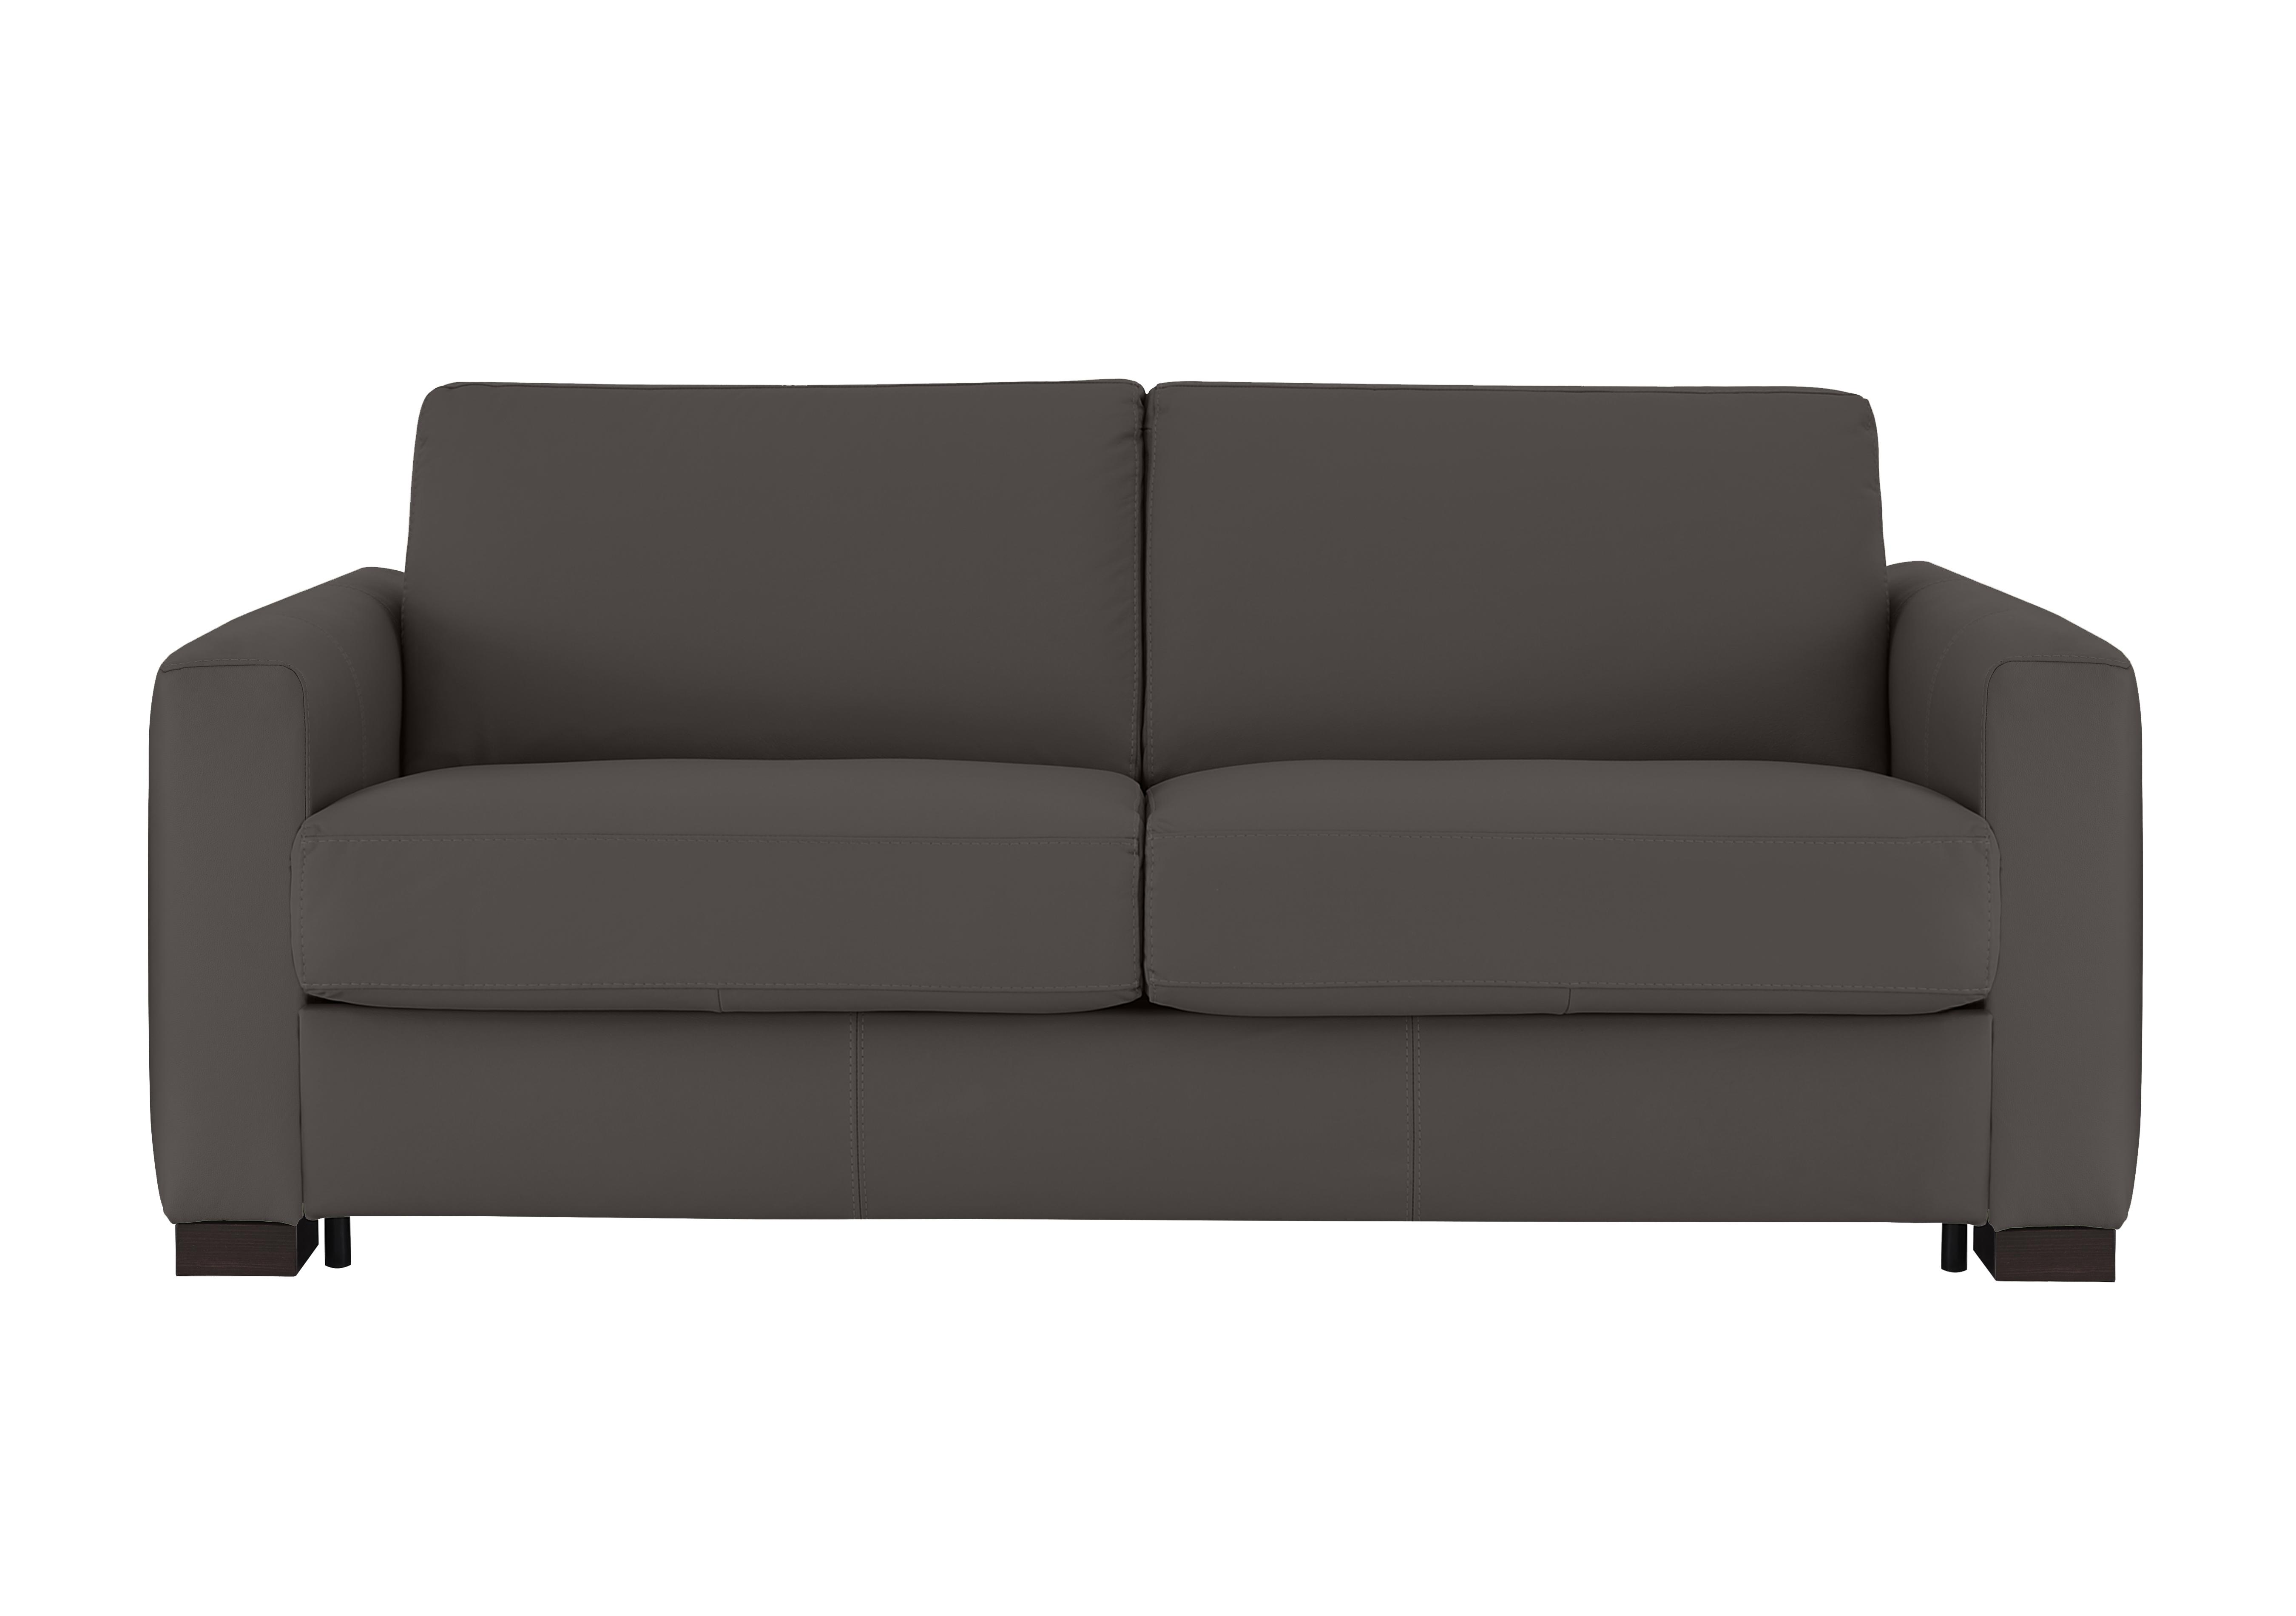 Alcova 3 Seater Leather Sofa Bed with Box Arms in Torello Grigio Scuro 327 on Furniture Village